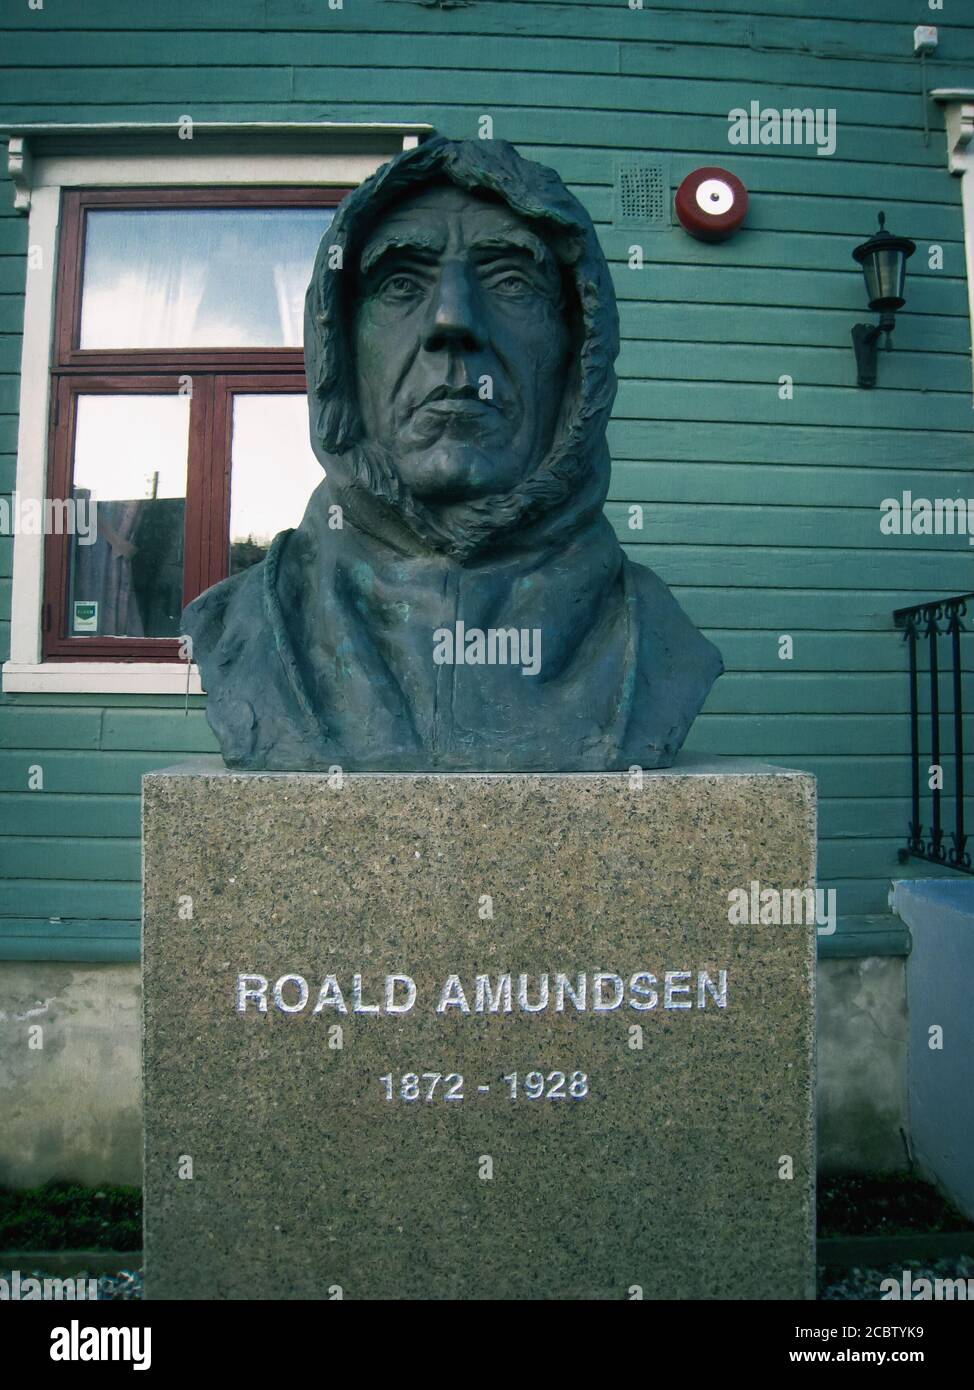 Tromso. Norvegia. 5 marzo. 2007: Busto del famoso esploratore polare norvegese Roald Amundsen nella città di Troms nel nord della Norvegia Foto Stock